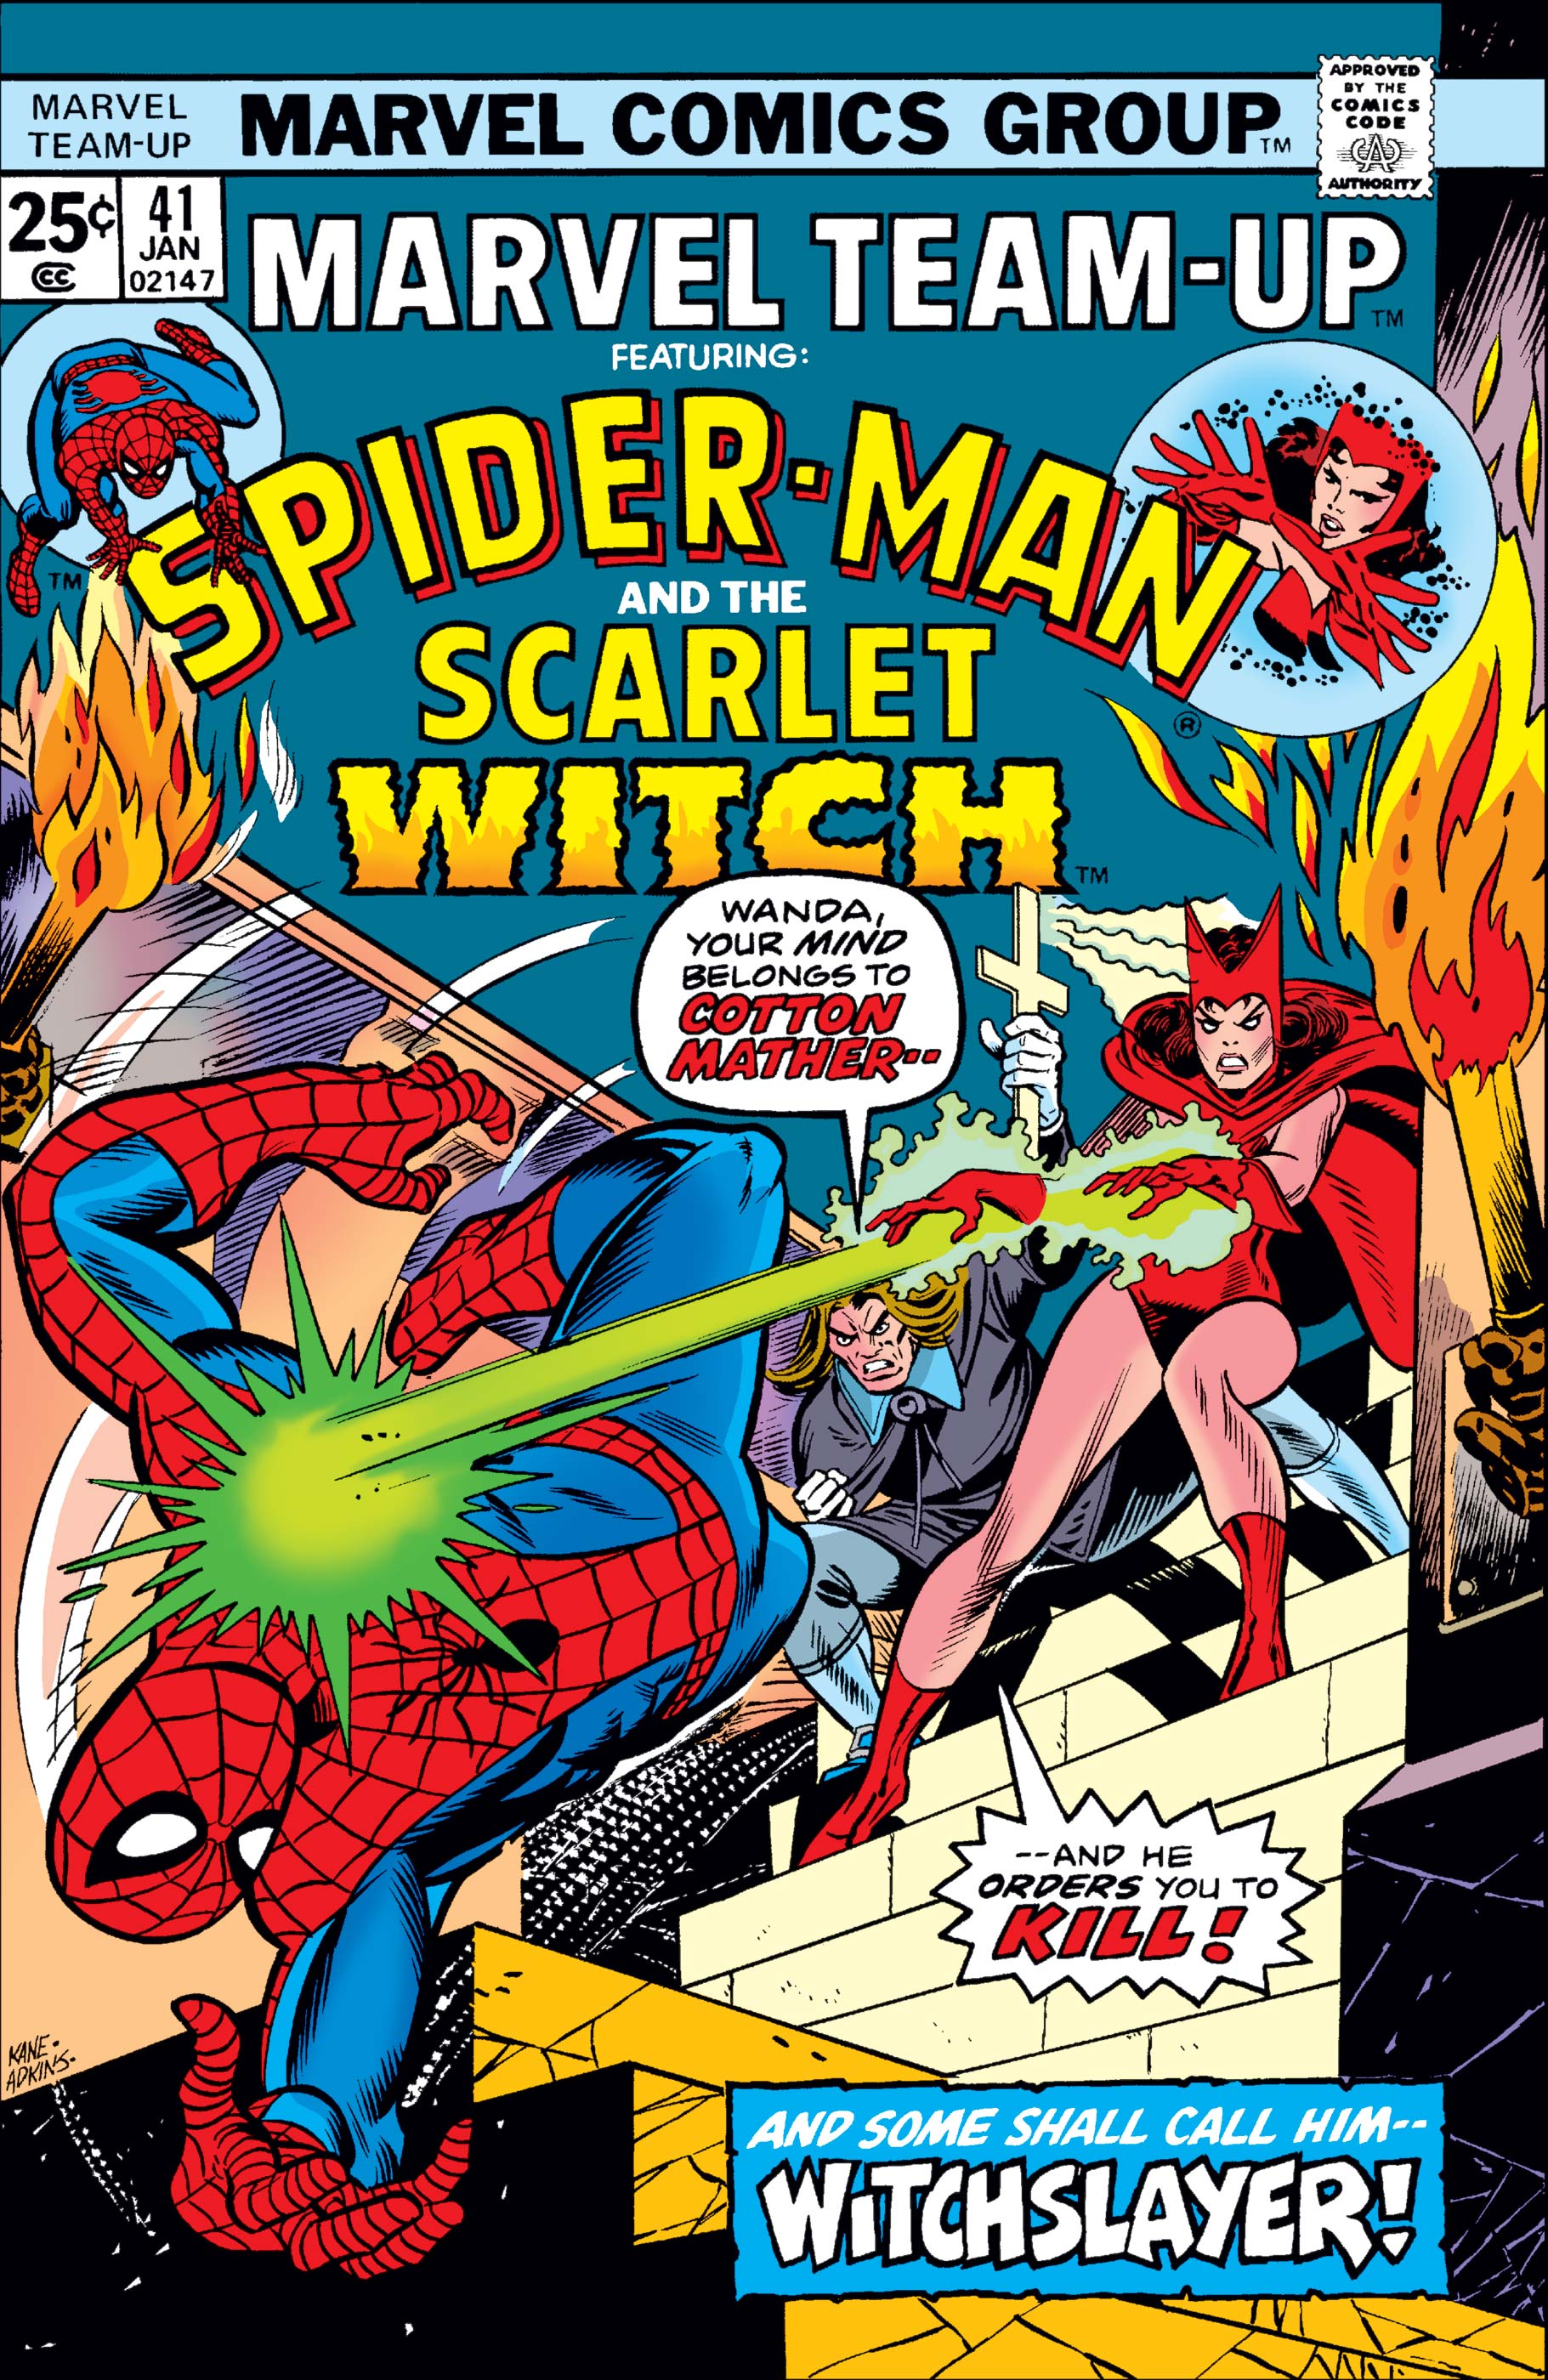 Marvel Team-Up (1972) #41 | Comic Issues | Marvel